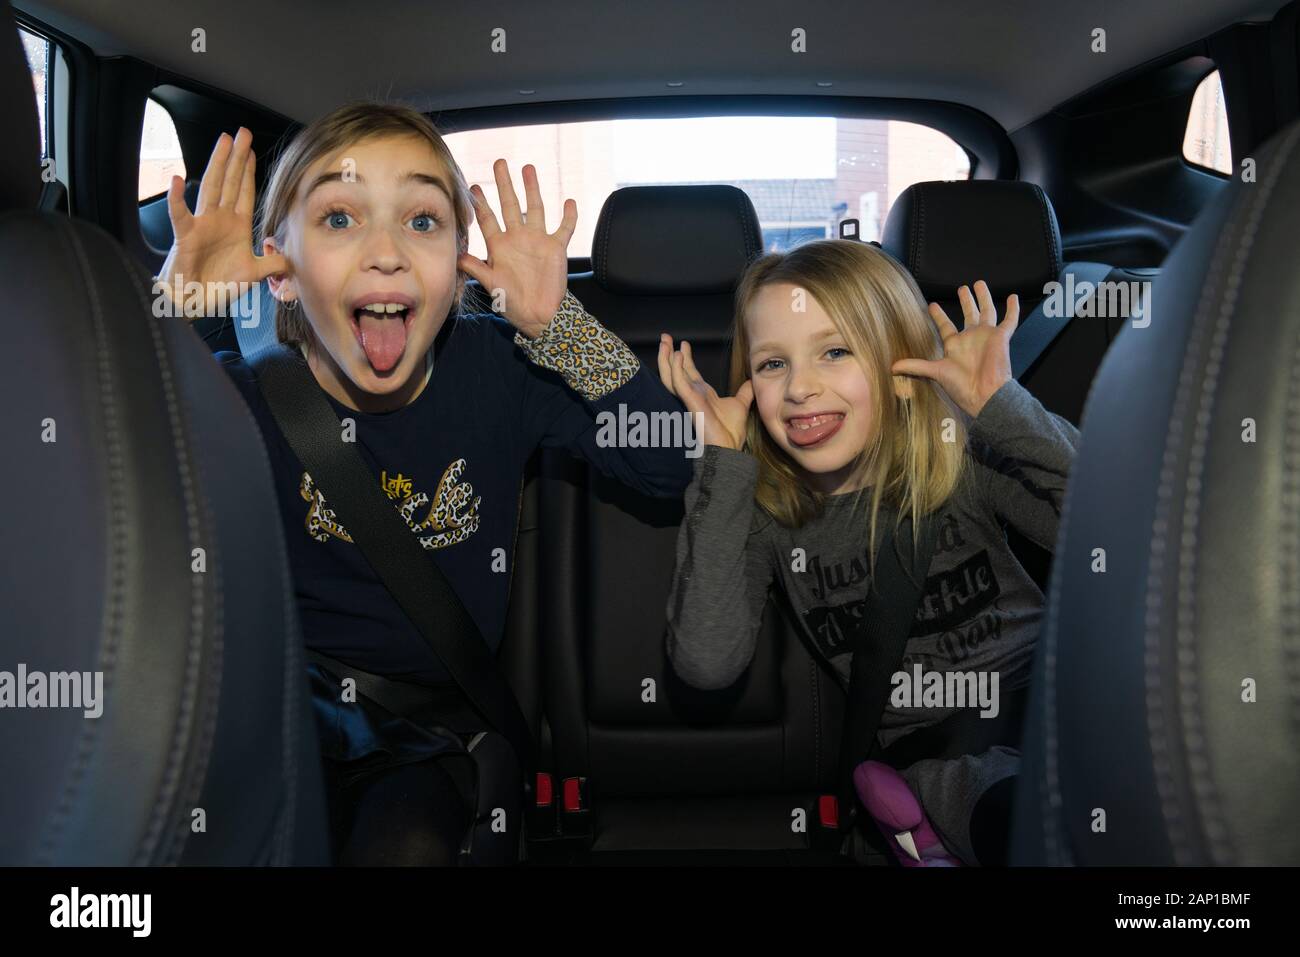 Deux enfants à l'arrière d'une voiture font des visages bizarres Banque D'Images